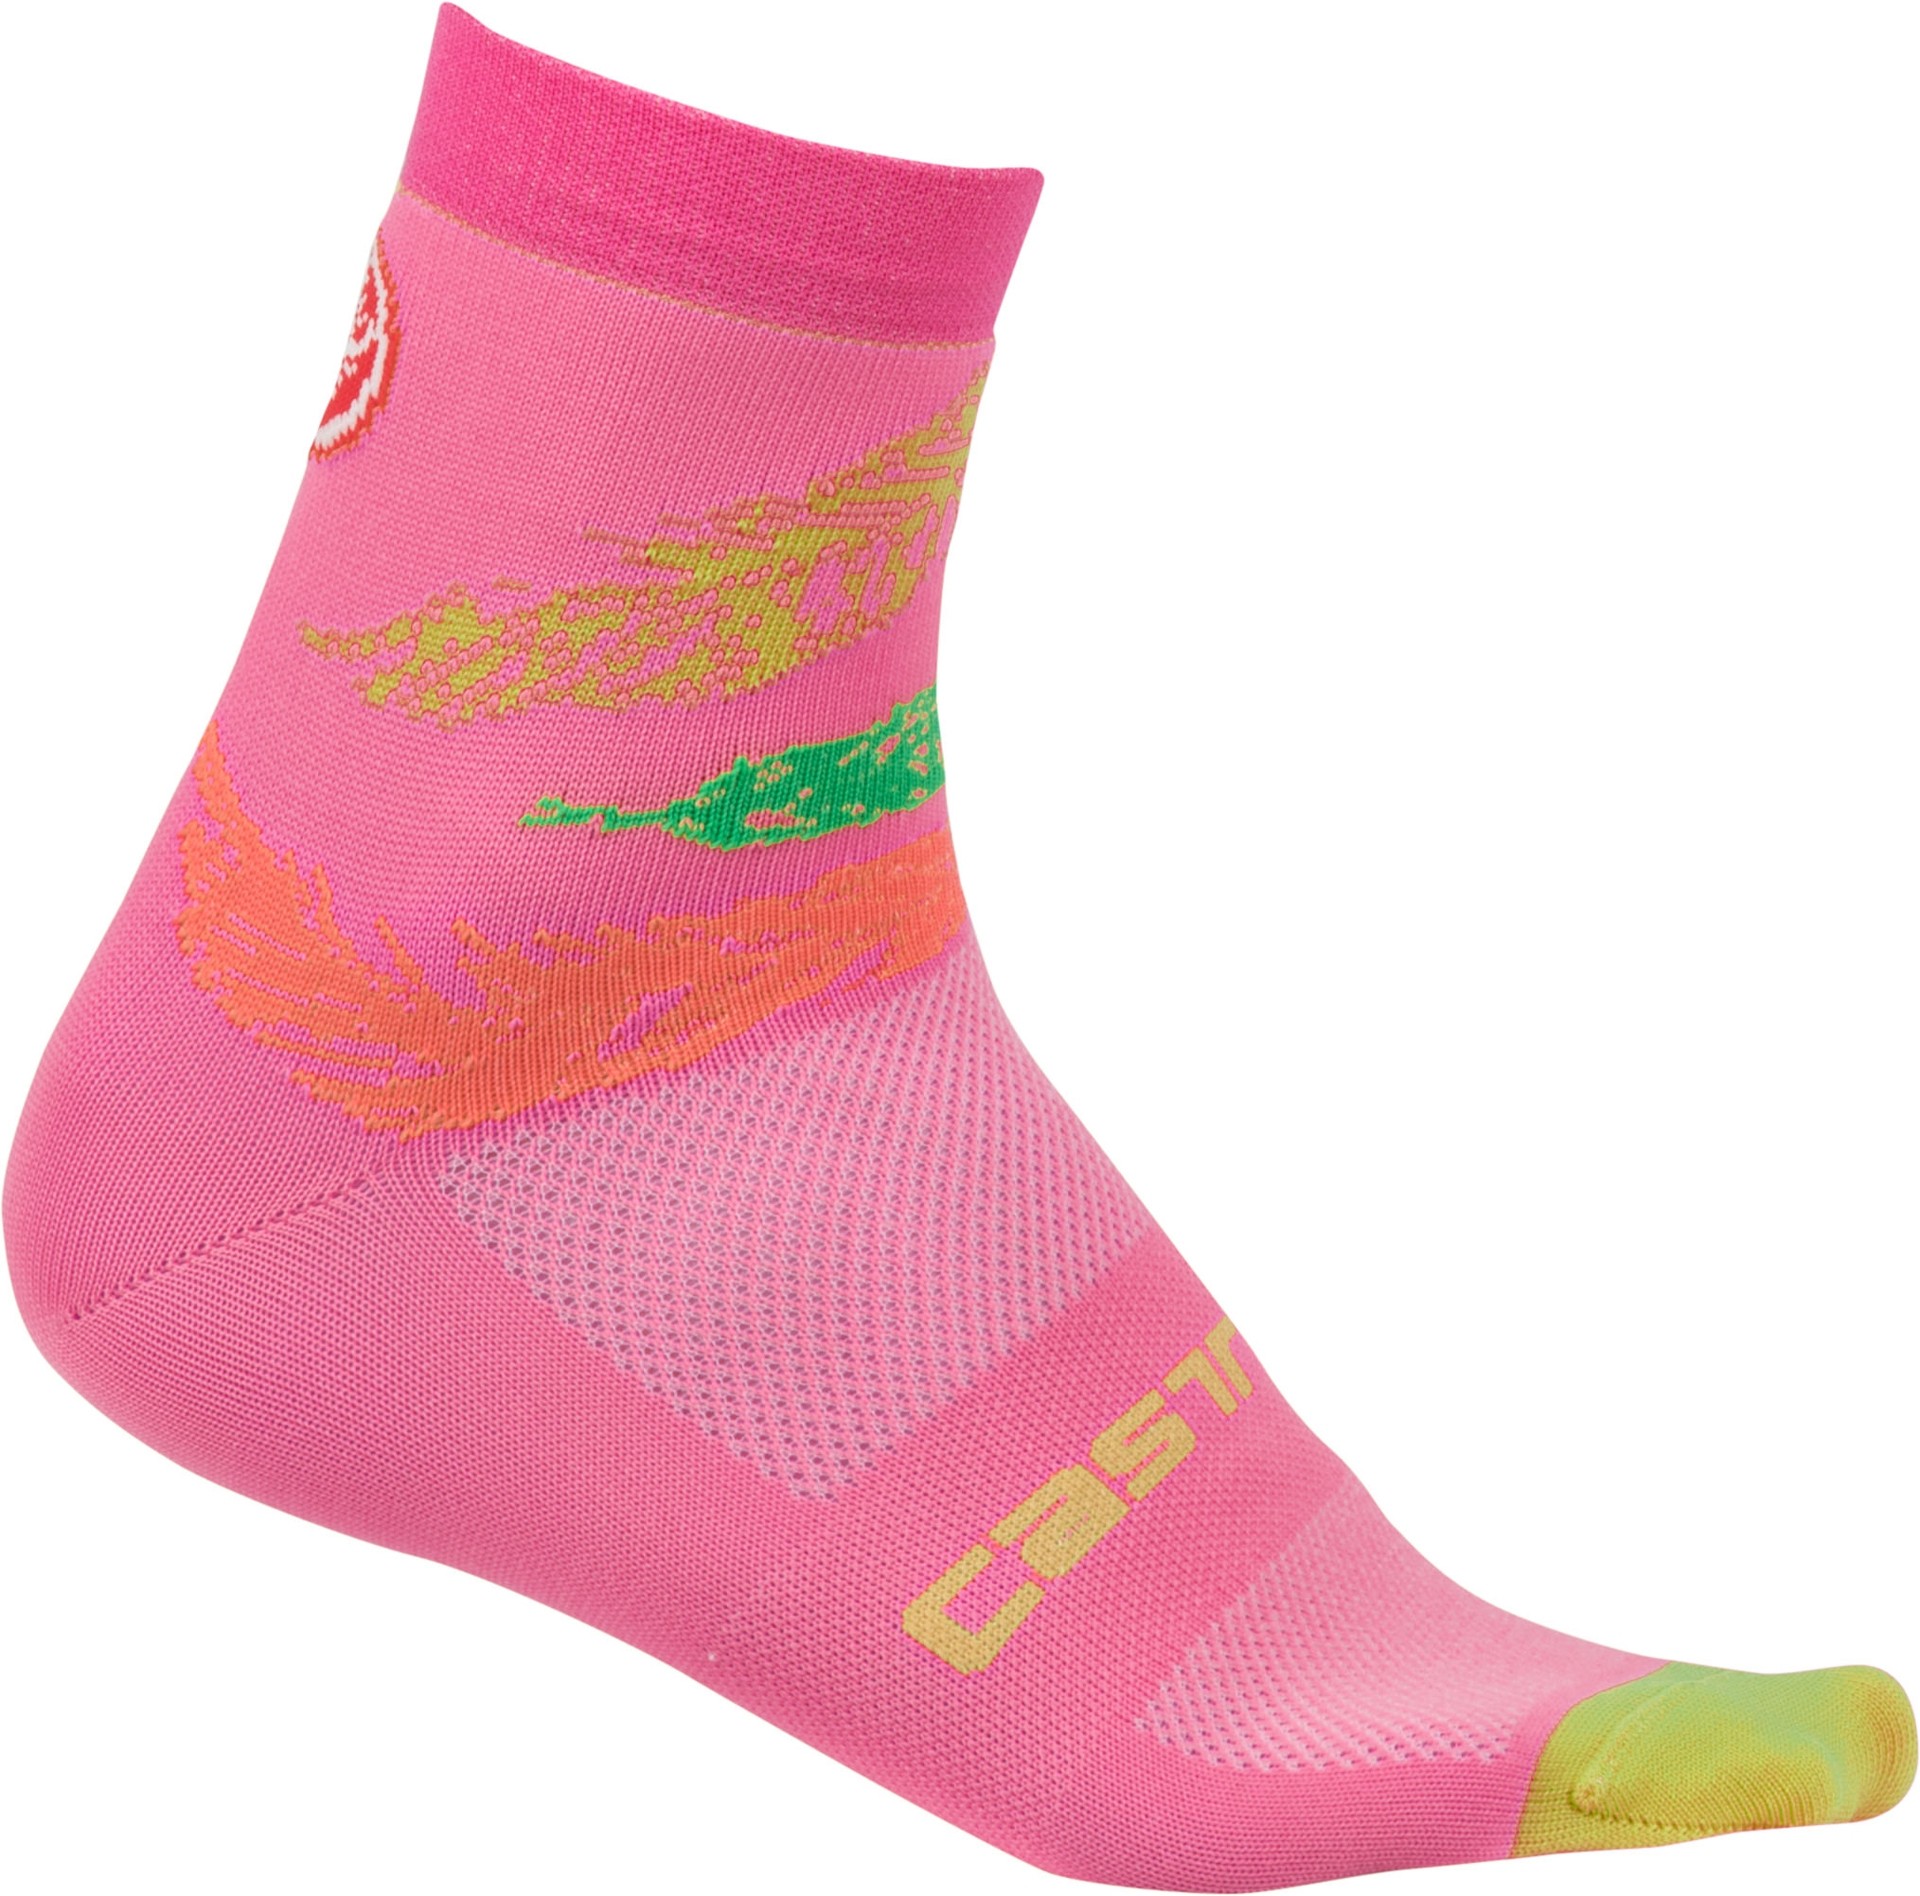 Castelli tr chaussettes de cyclisme femme piuma rose